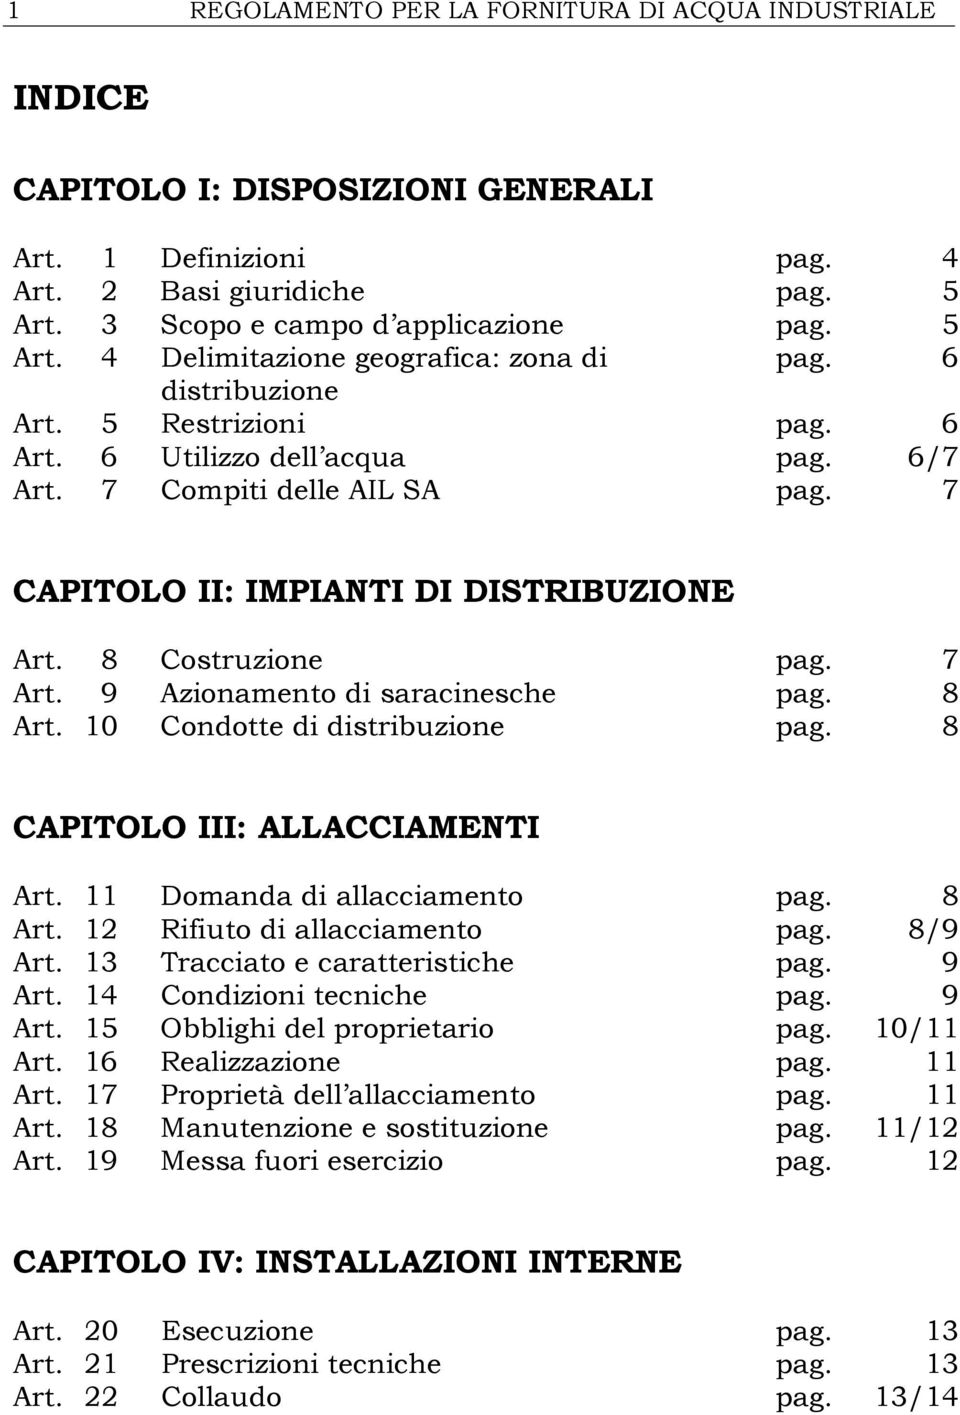 9 Azionamento di saracinesche pag. 8 Art. 10 Condotte di distribuzione pag. 8 CAPITOLO III: ALLACCIAMENTI Art. 11 Domanda di allacciamento pag. 8 Art. 12 Rifiuto di allacciamento pag. 8/9 Art.